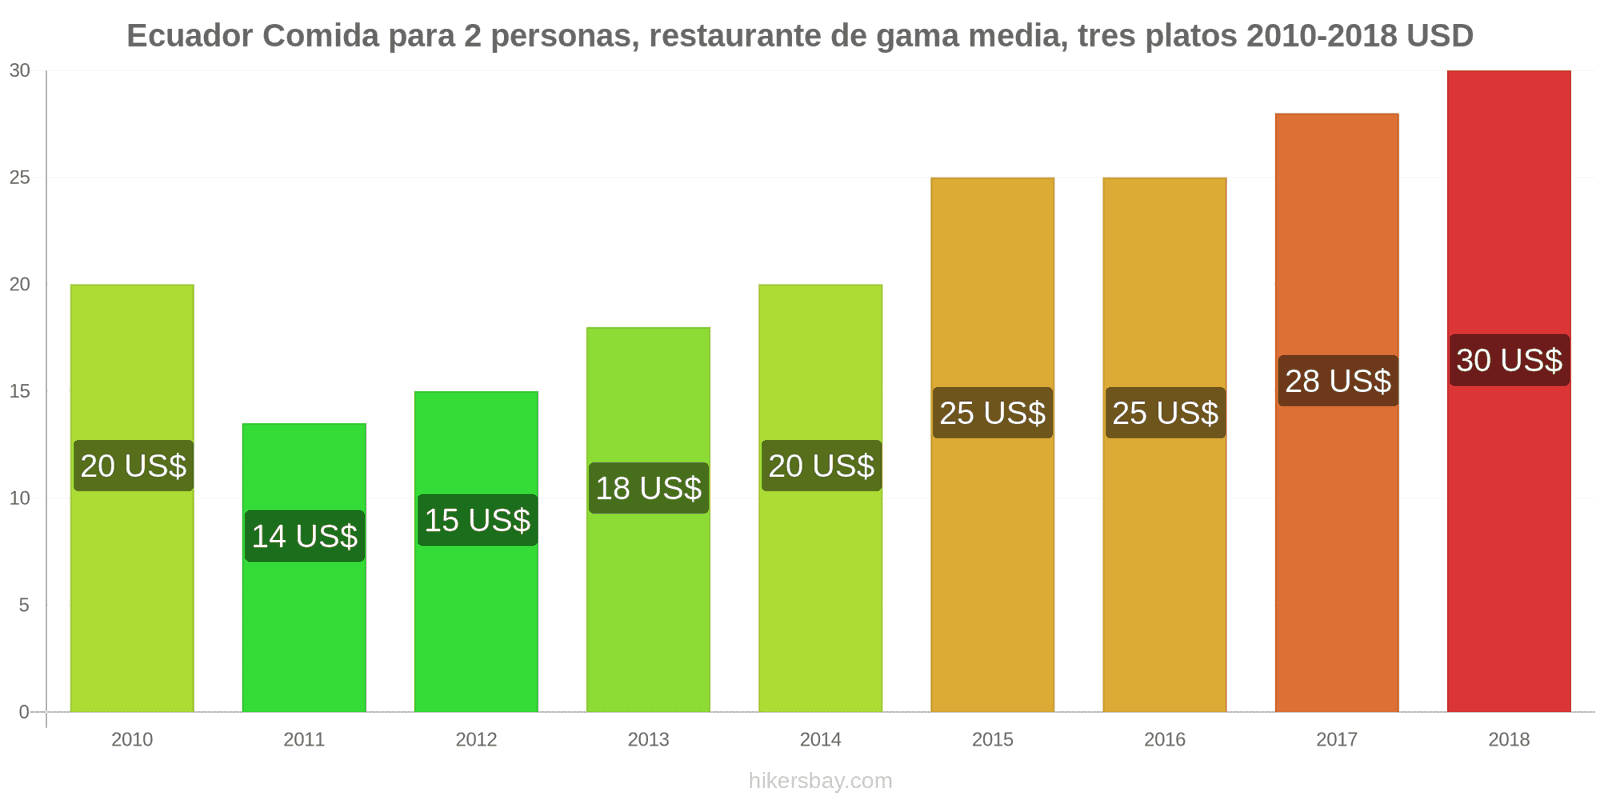 Ecuador cambios de precios Comida para 2 personas, restaurante de gama media, tres platos hikersbay.com